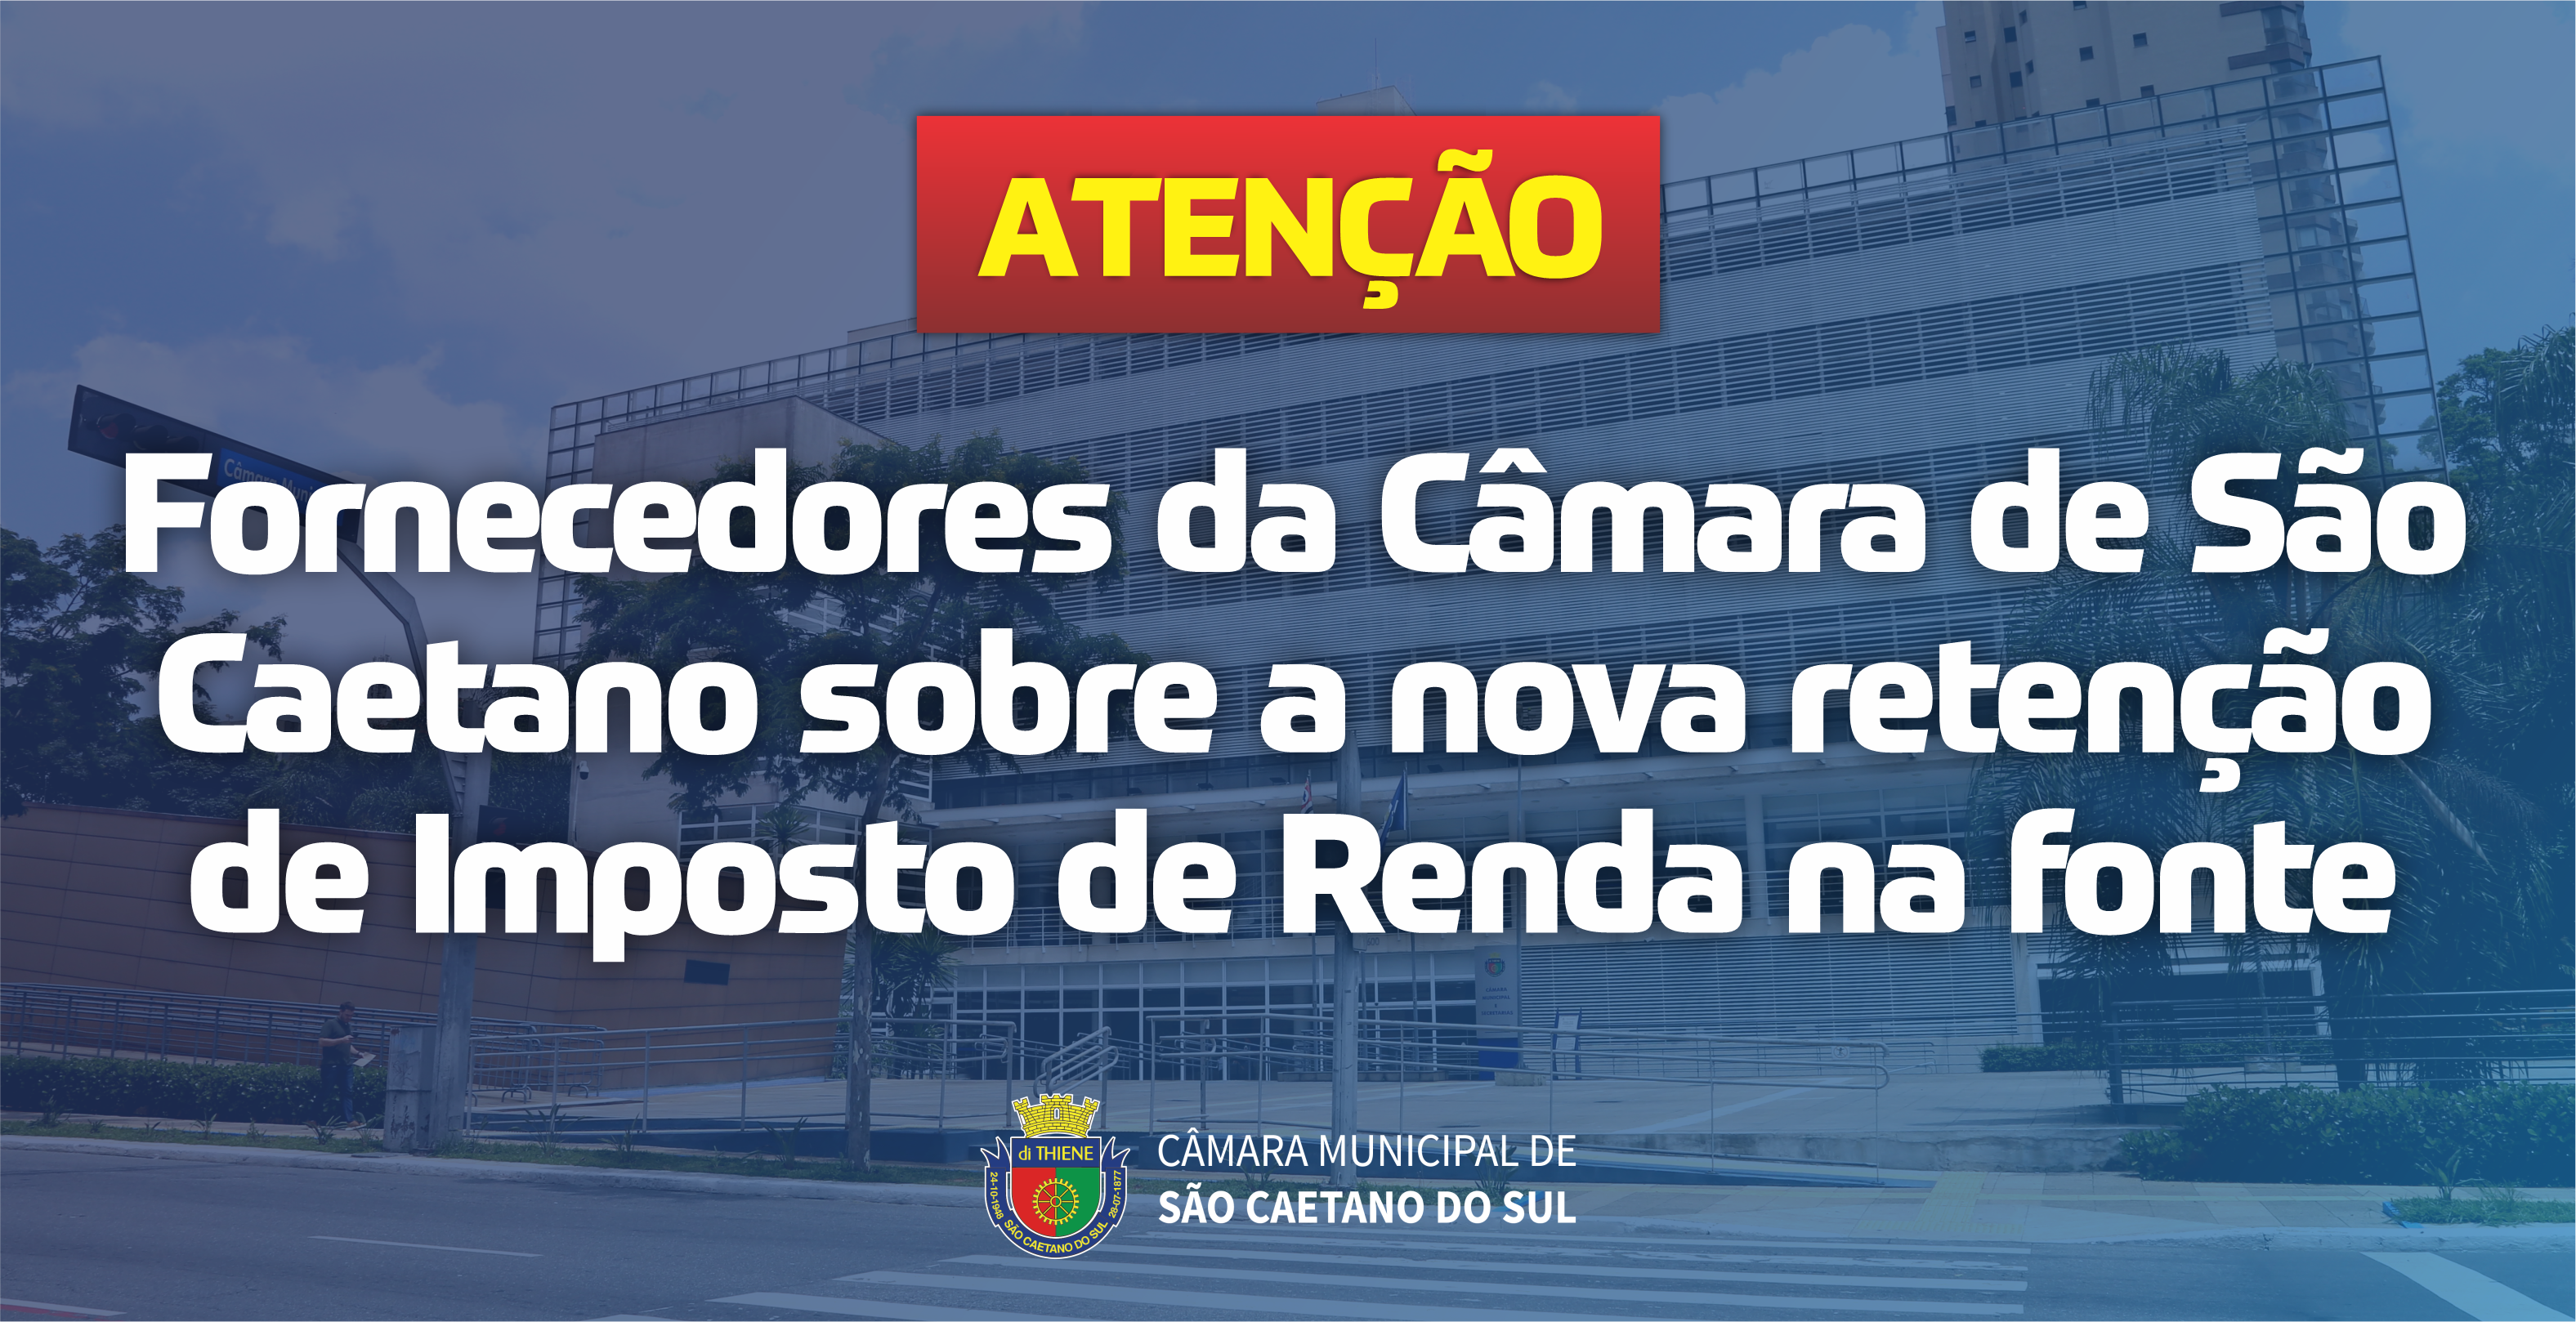 Câmara de São Caetano procederá a retenção de Imposto de Renda na fonte.